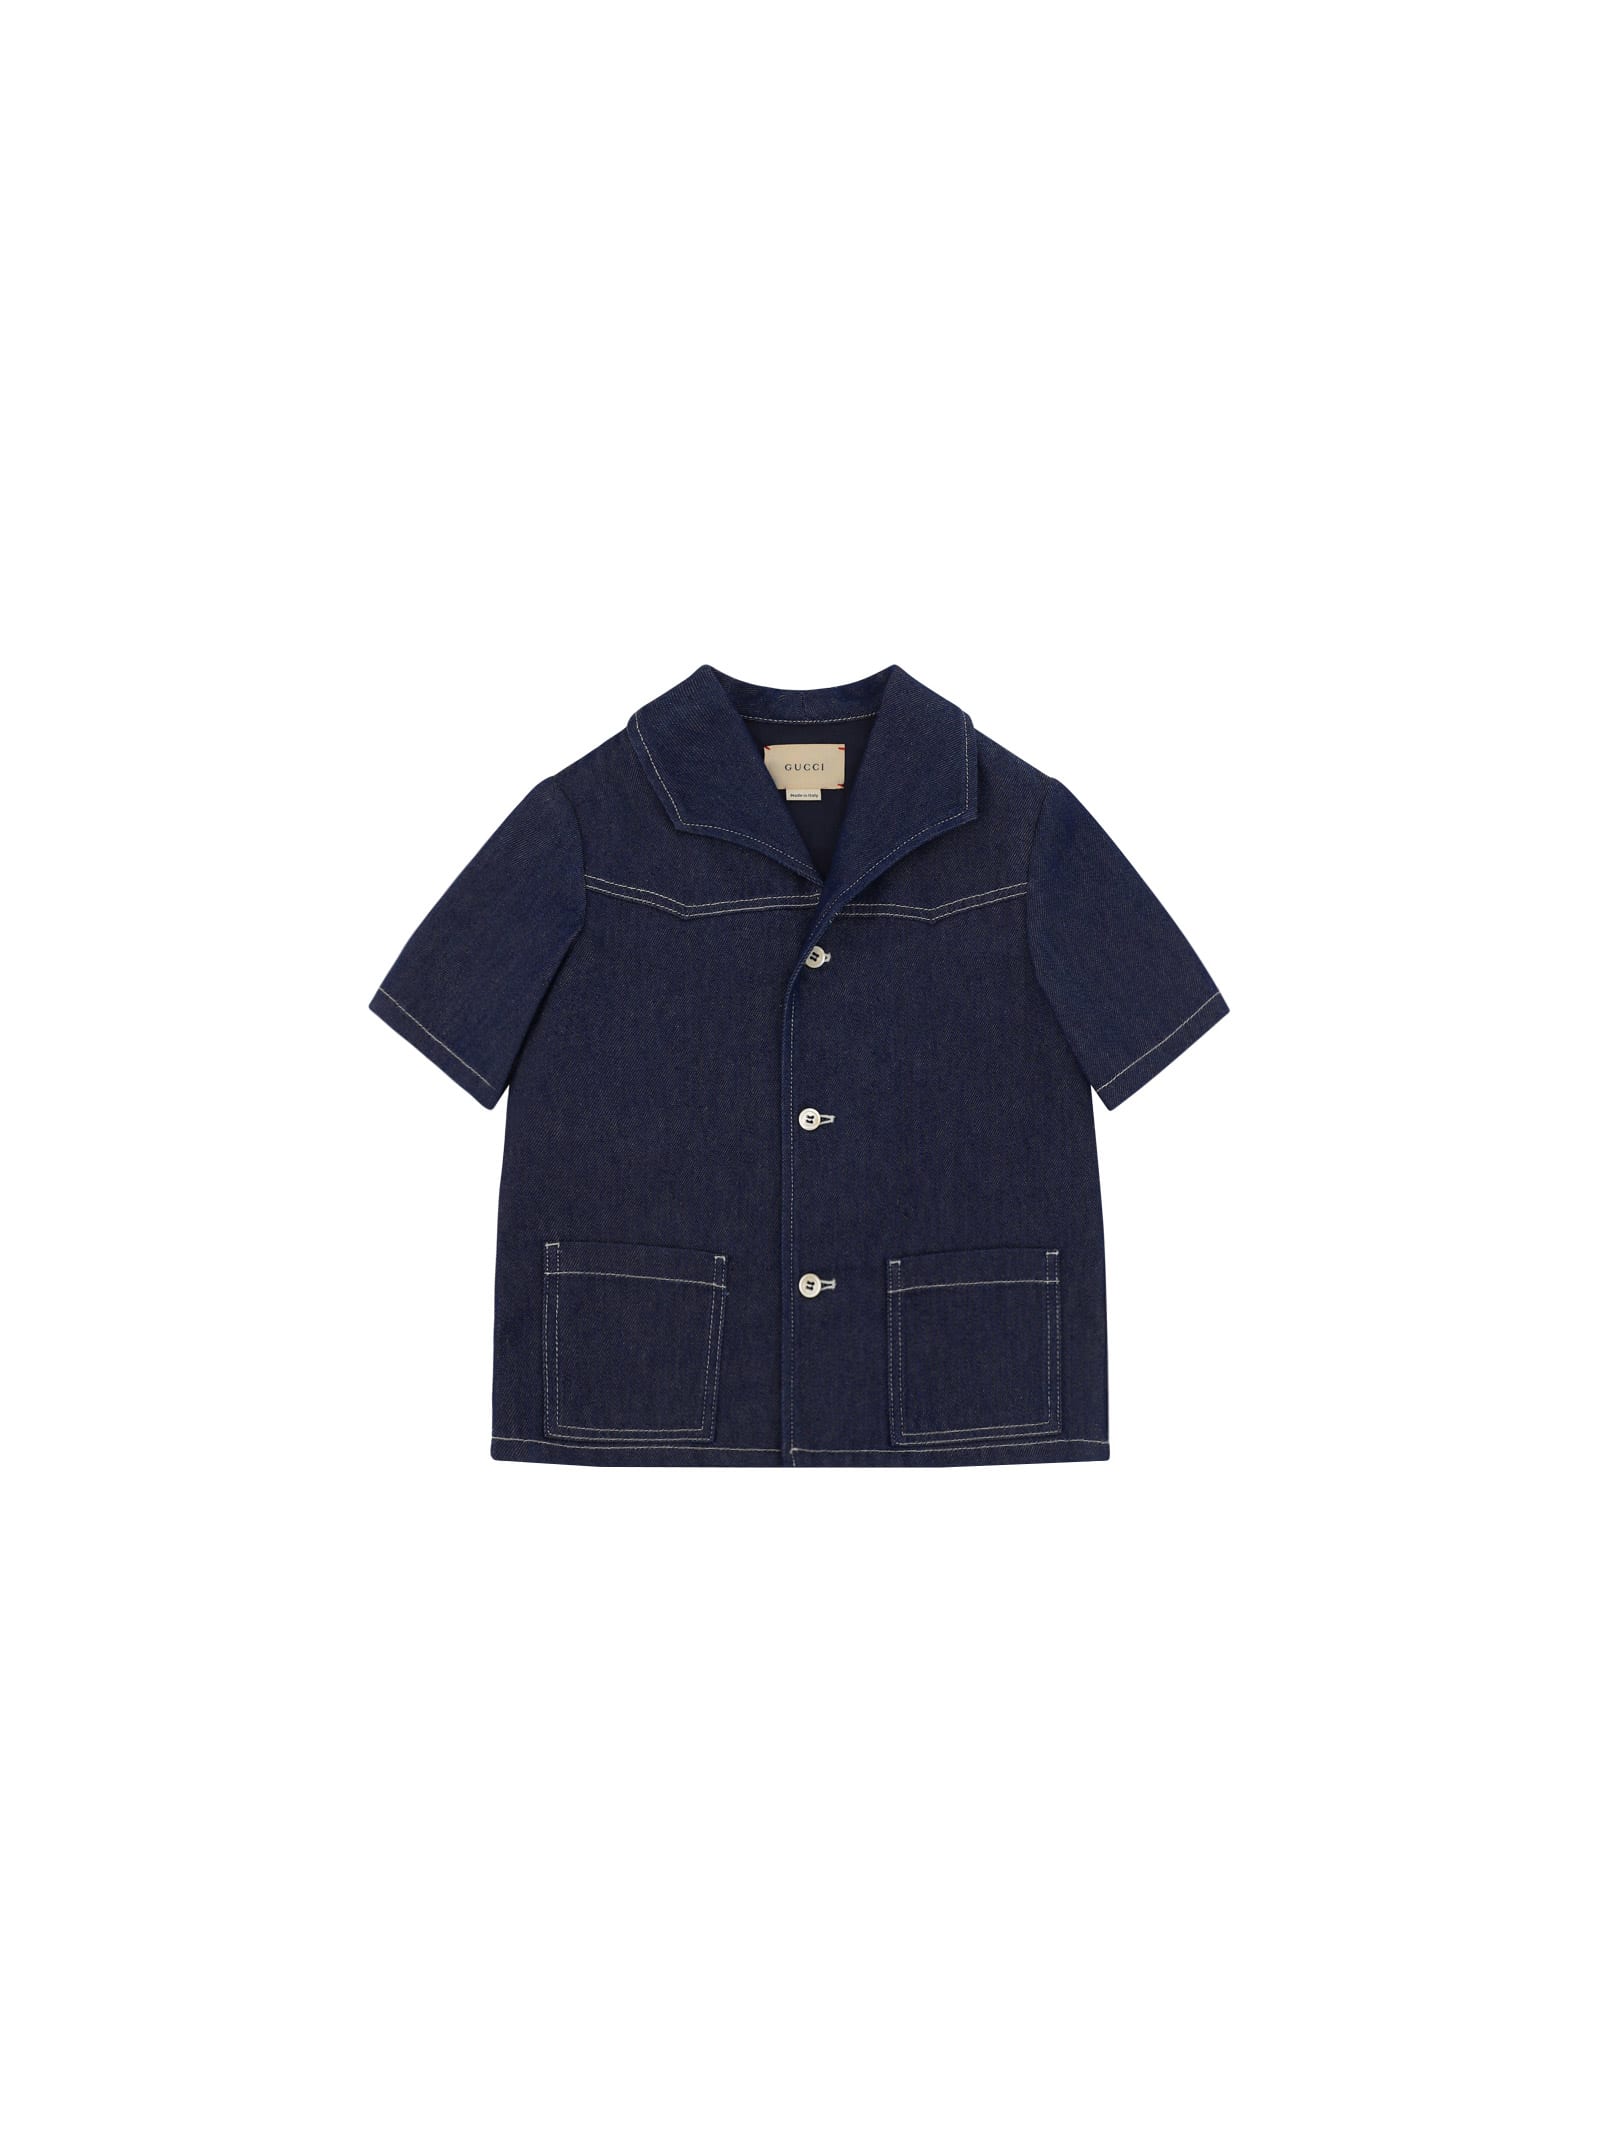 GUCCI: Coat kids - Blue  Gucci coat 692672XWATR online at